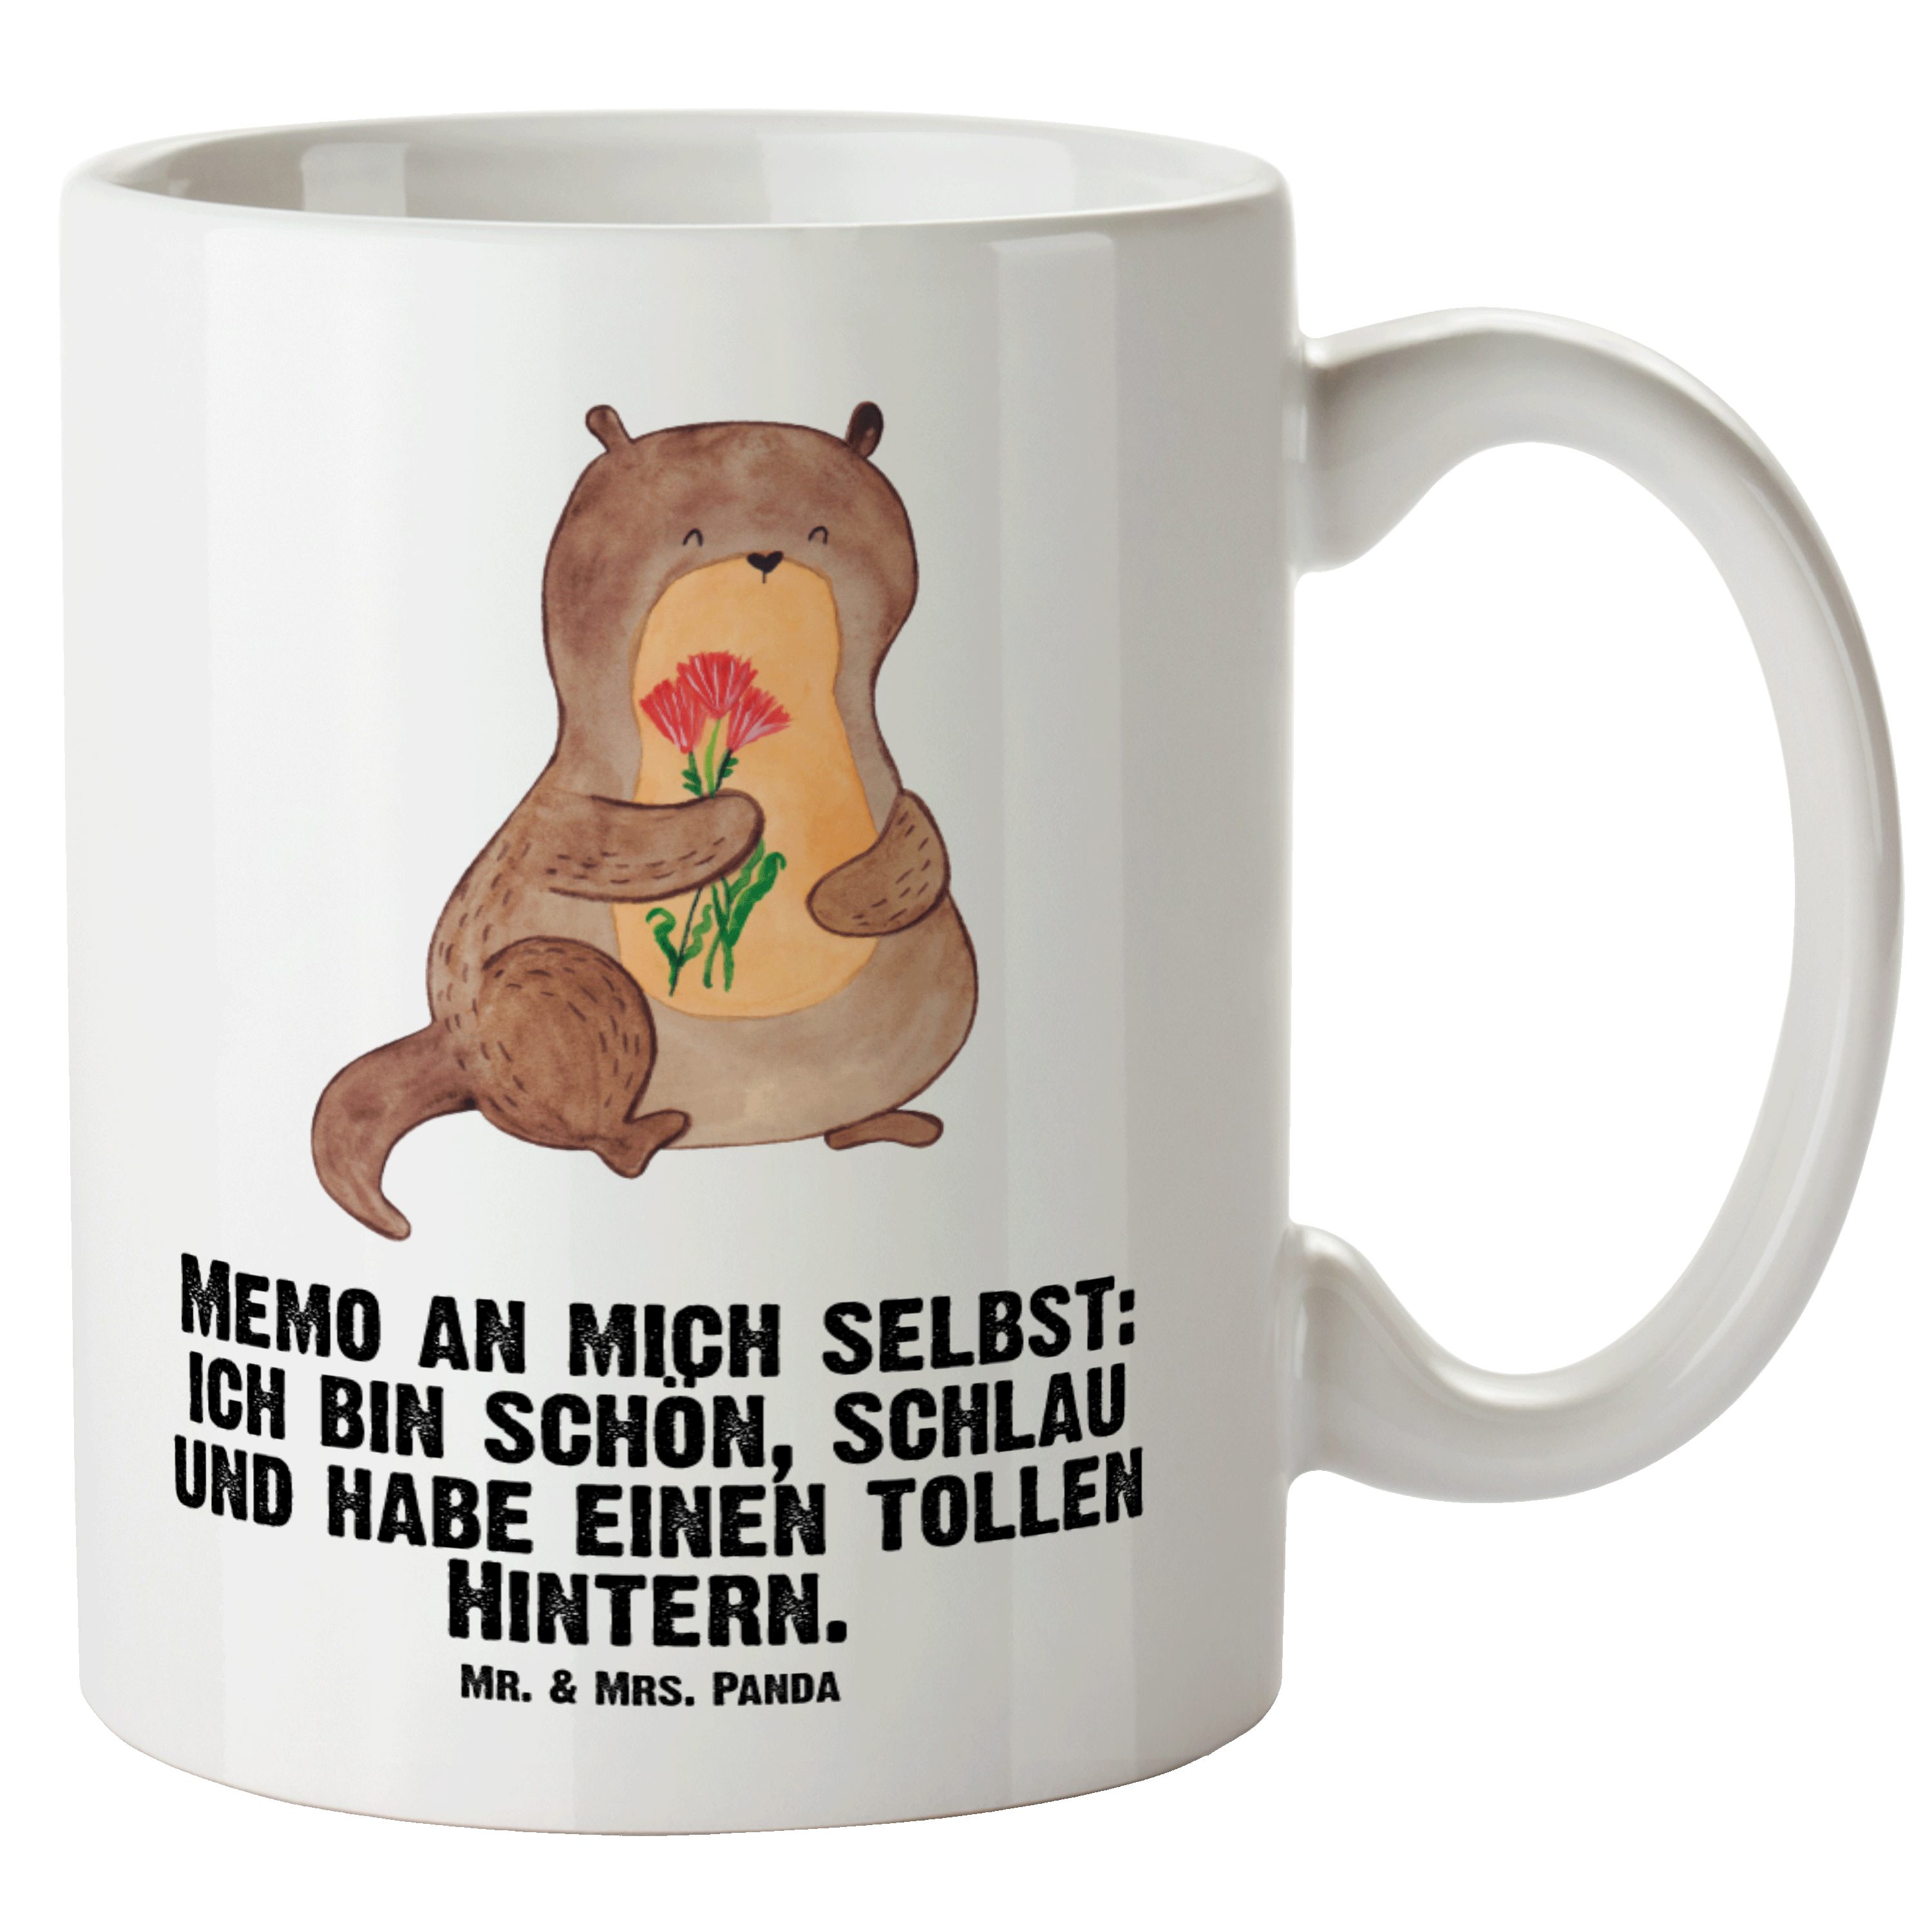 Mr. & Mrs. Panda Tasse Otter Blumenstrauß - Weiß - Geschenk, Seeotter, niedlich, Jumbo Tasse, XL Tasse Keramik